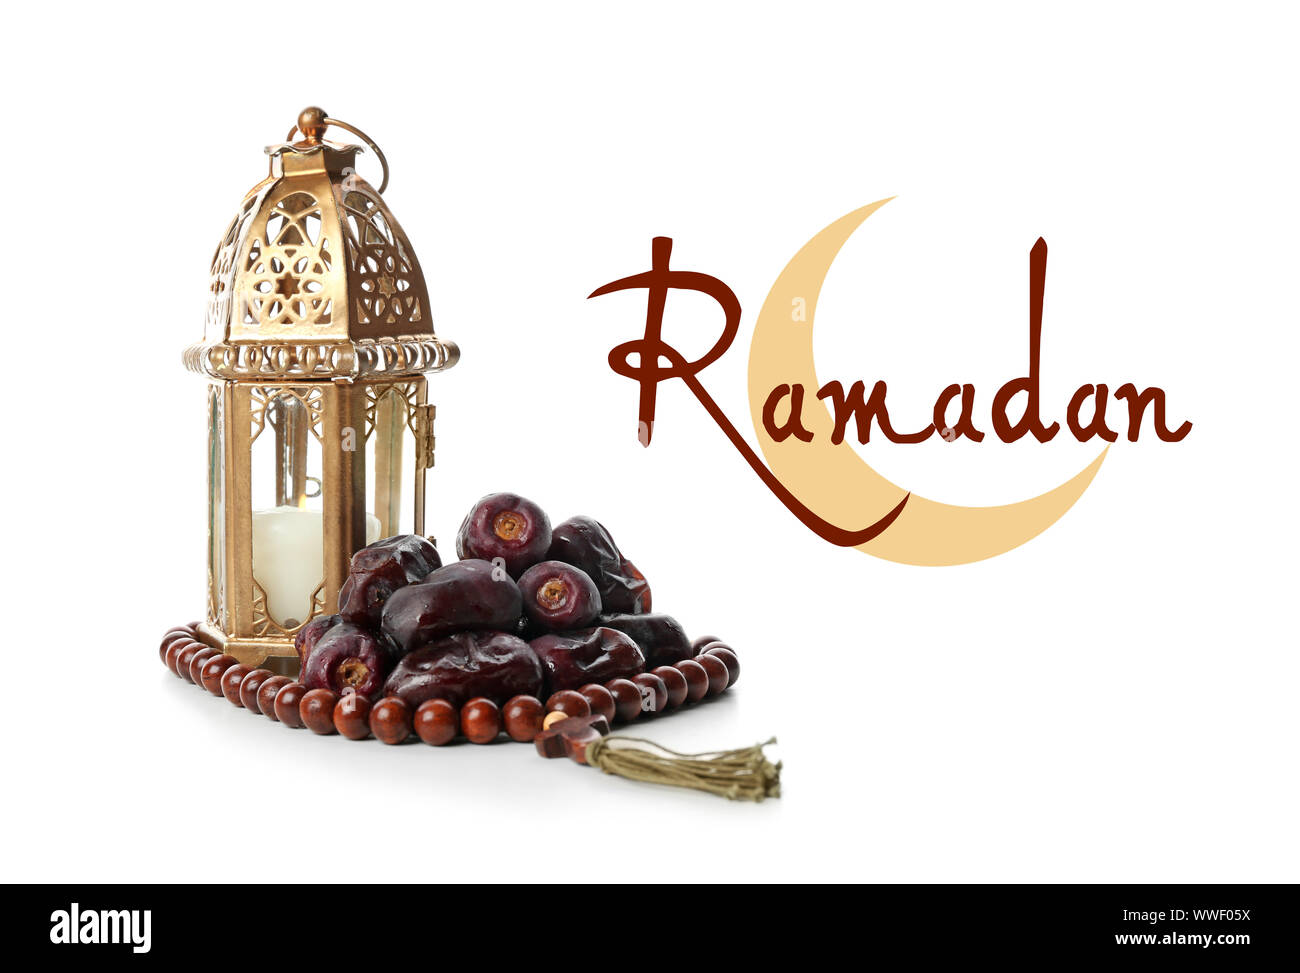 Lámpara musulmana, fechas tasbih y palabra Ramadán sobre fondo blanco. Foto de stock